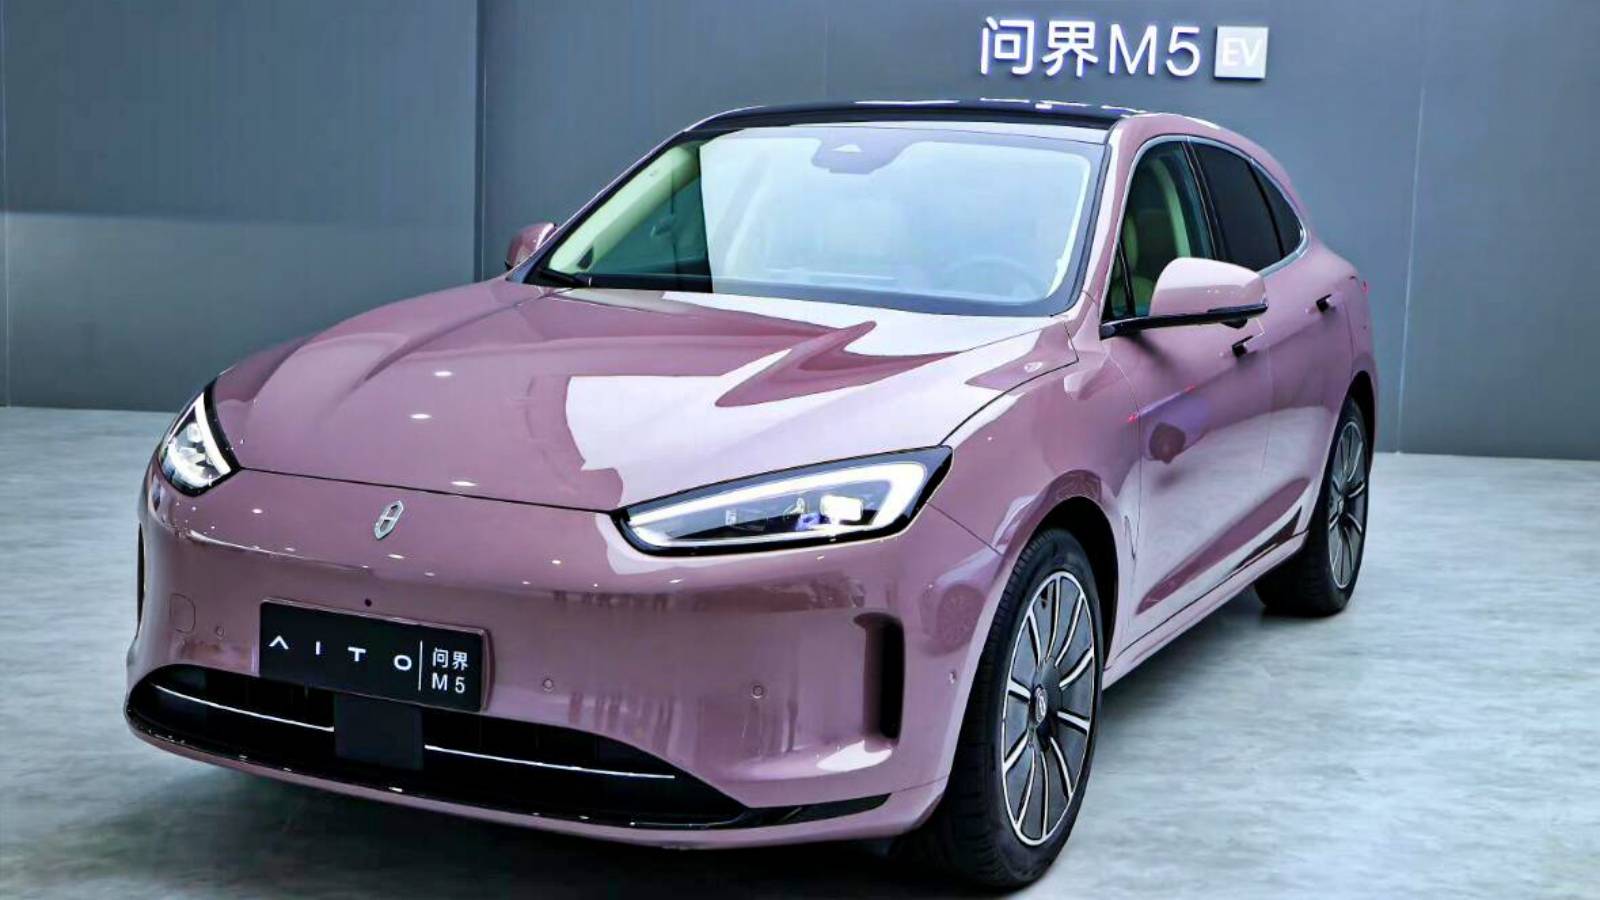 Huawei lanceert officieel Aito M5, de nieuwe elektrische auto van het specifieke merk